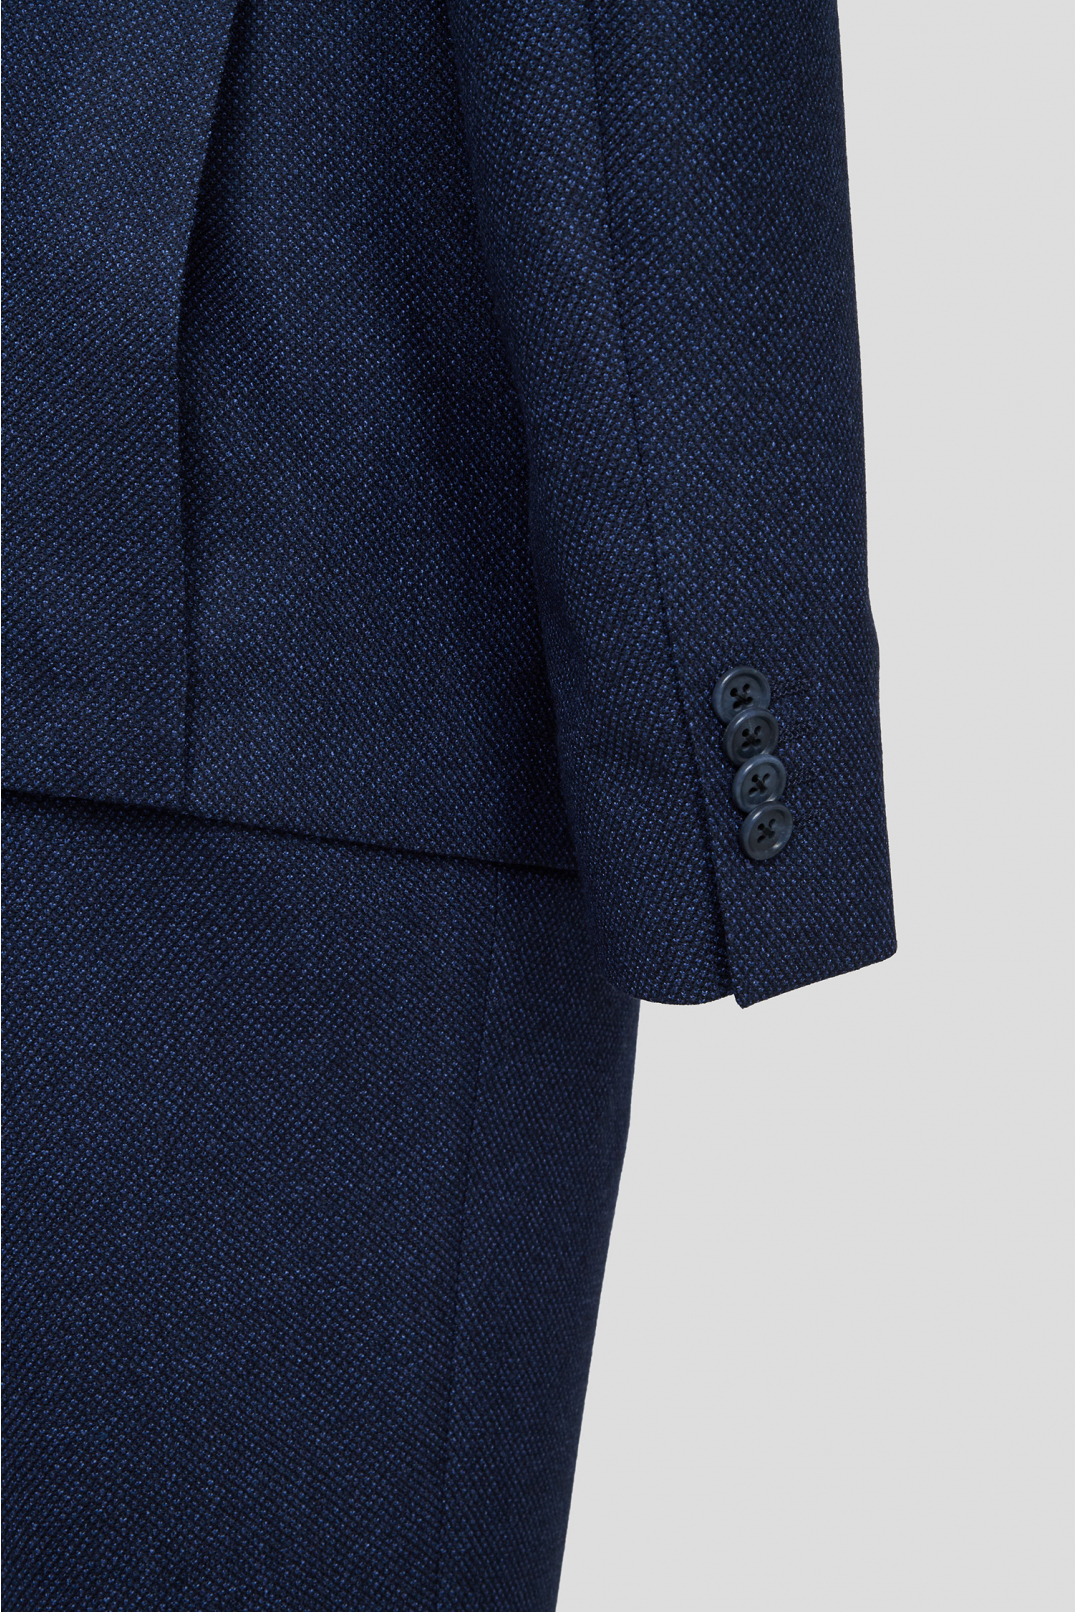 Мужской темно-синий шерстяной костюм с узором (пиджак, брюки) - 4